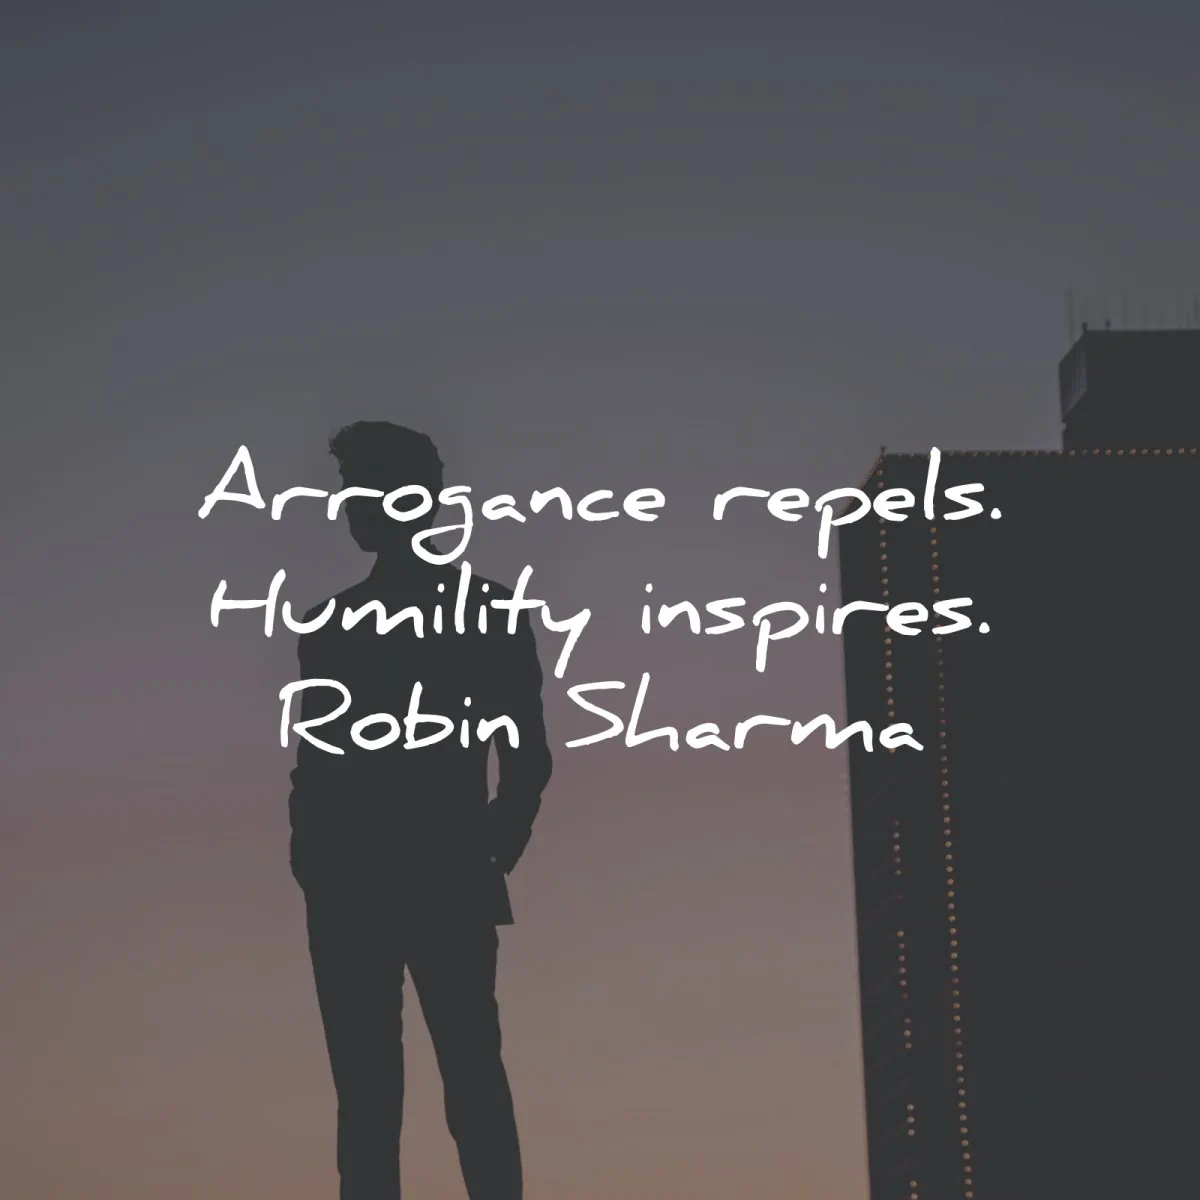 humility quotes arrogance repels inspires robin sharma wisdom